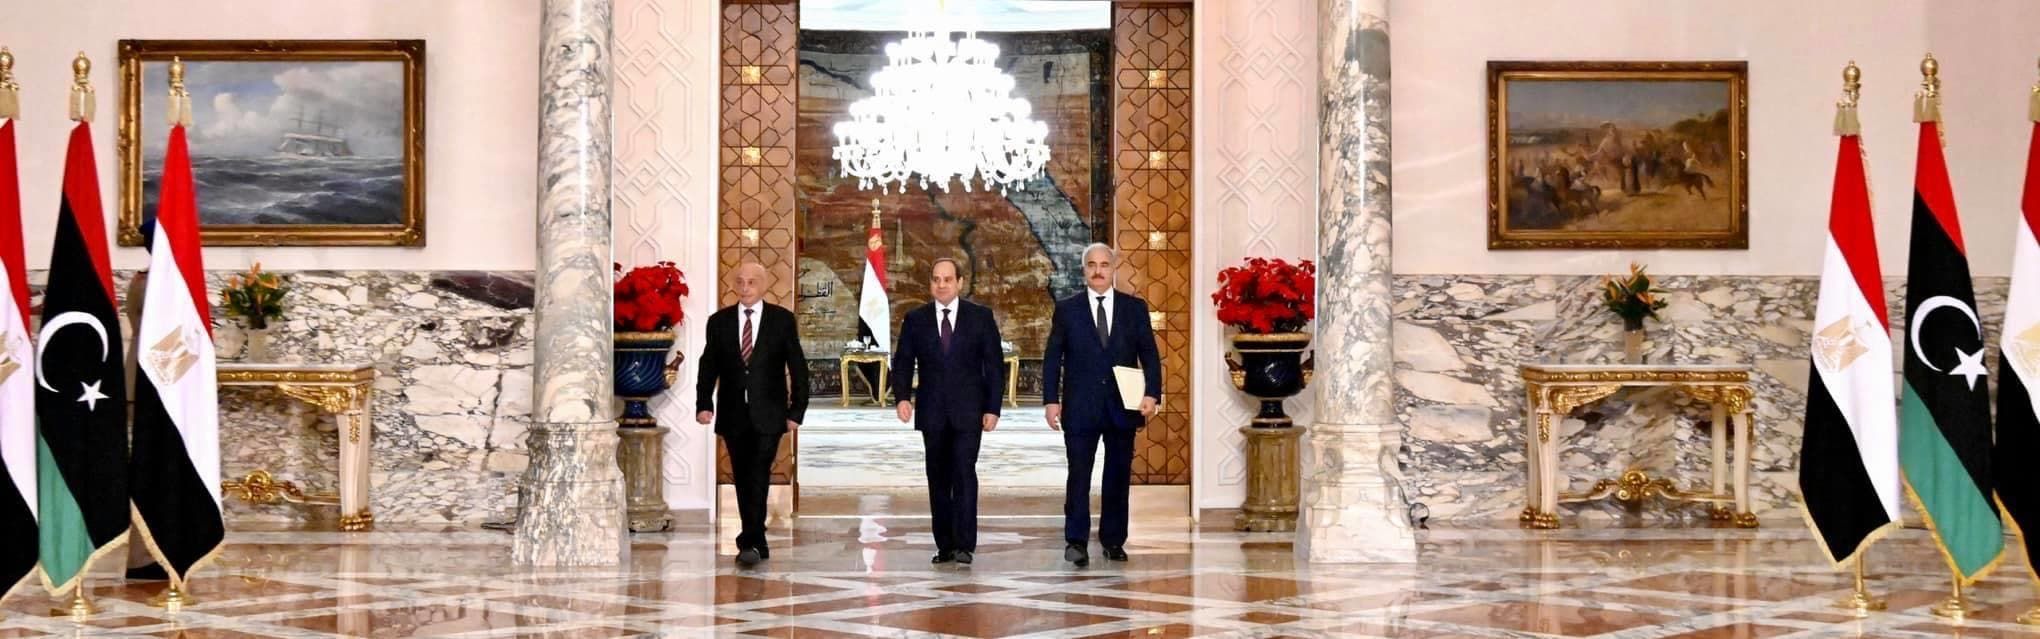 الرئيس السيسي يتوسط عقيلة صالح وقائد الجيش الليبي خليفة حفتر